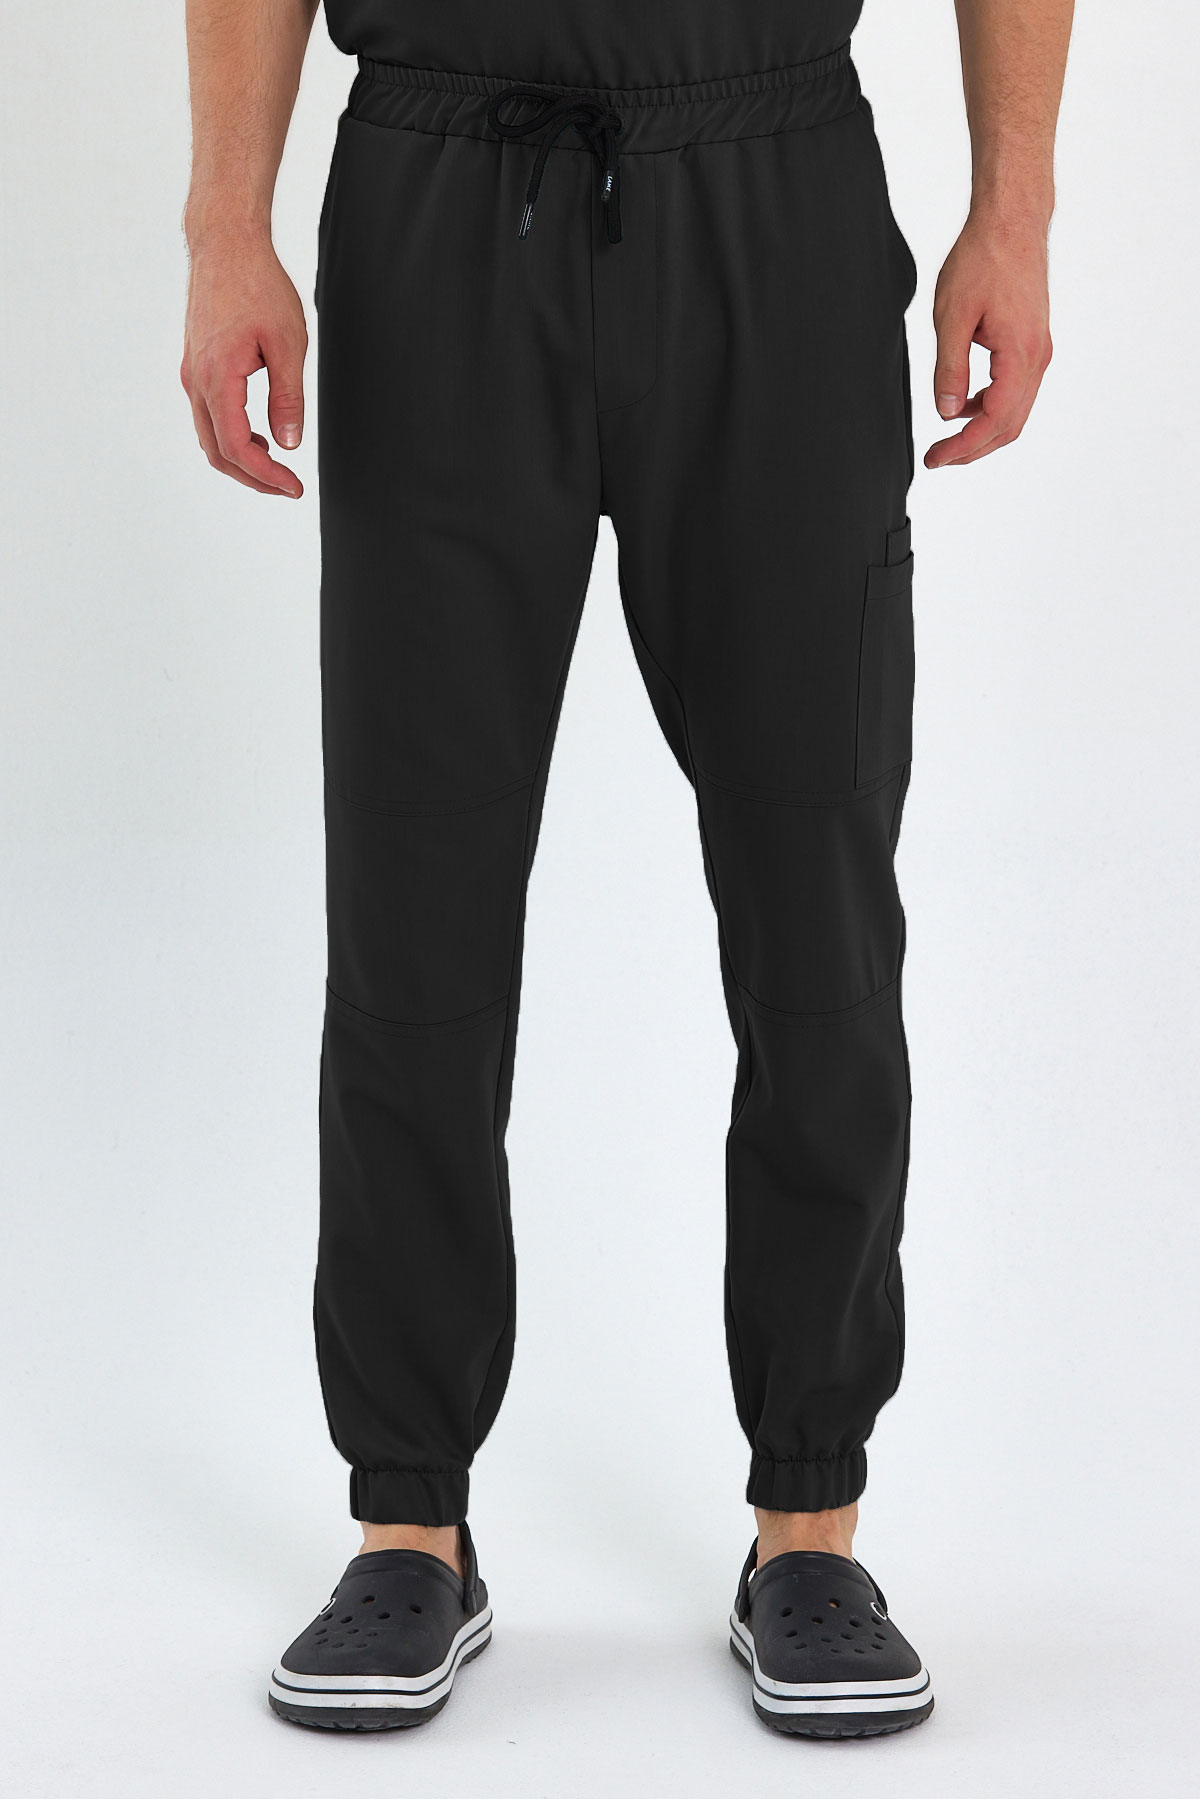 LAME 3005 Luxury Likralı Siyah Scrubs, Hemşire Forması Diz Ekli Kargo Cepli Paça Lastikli Pantolon